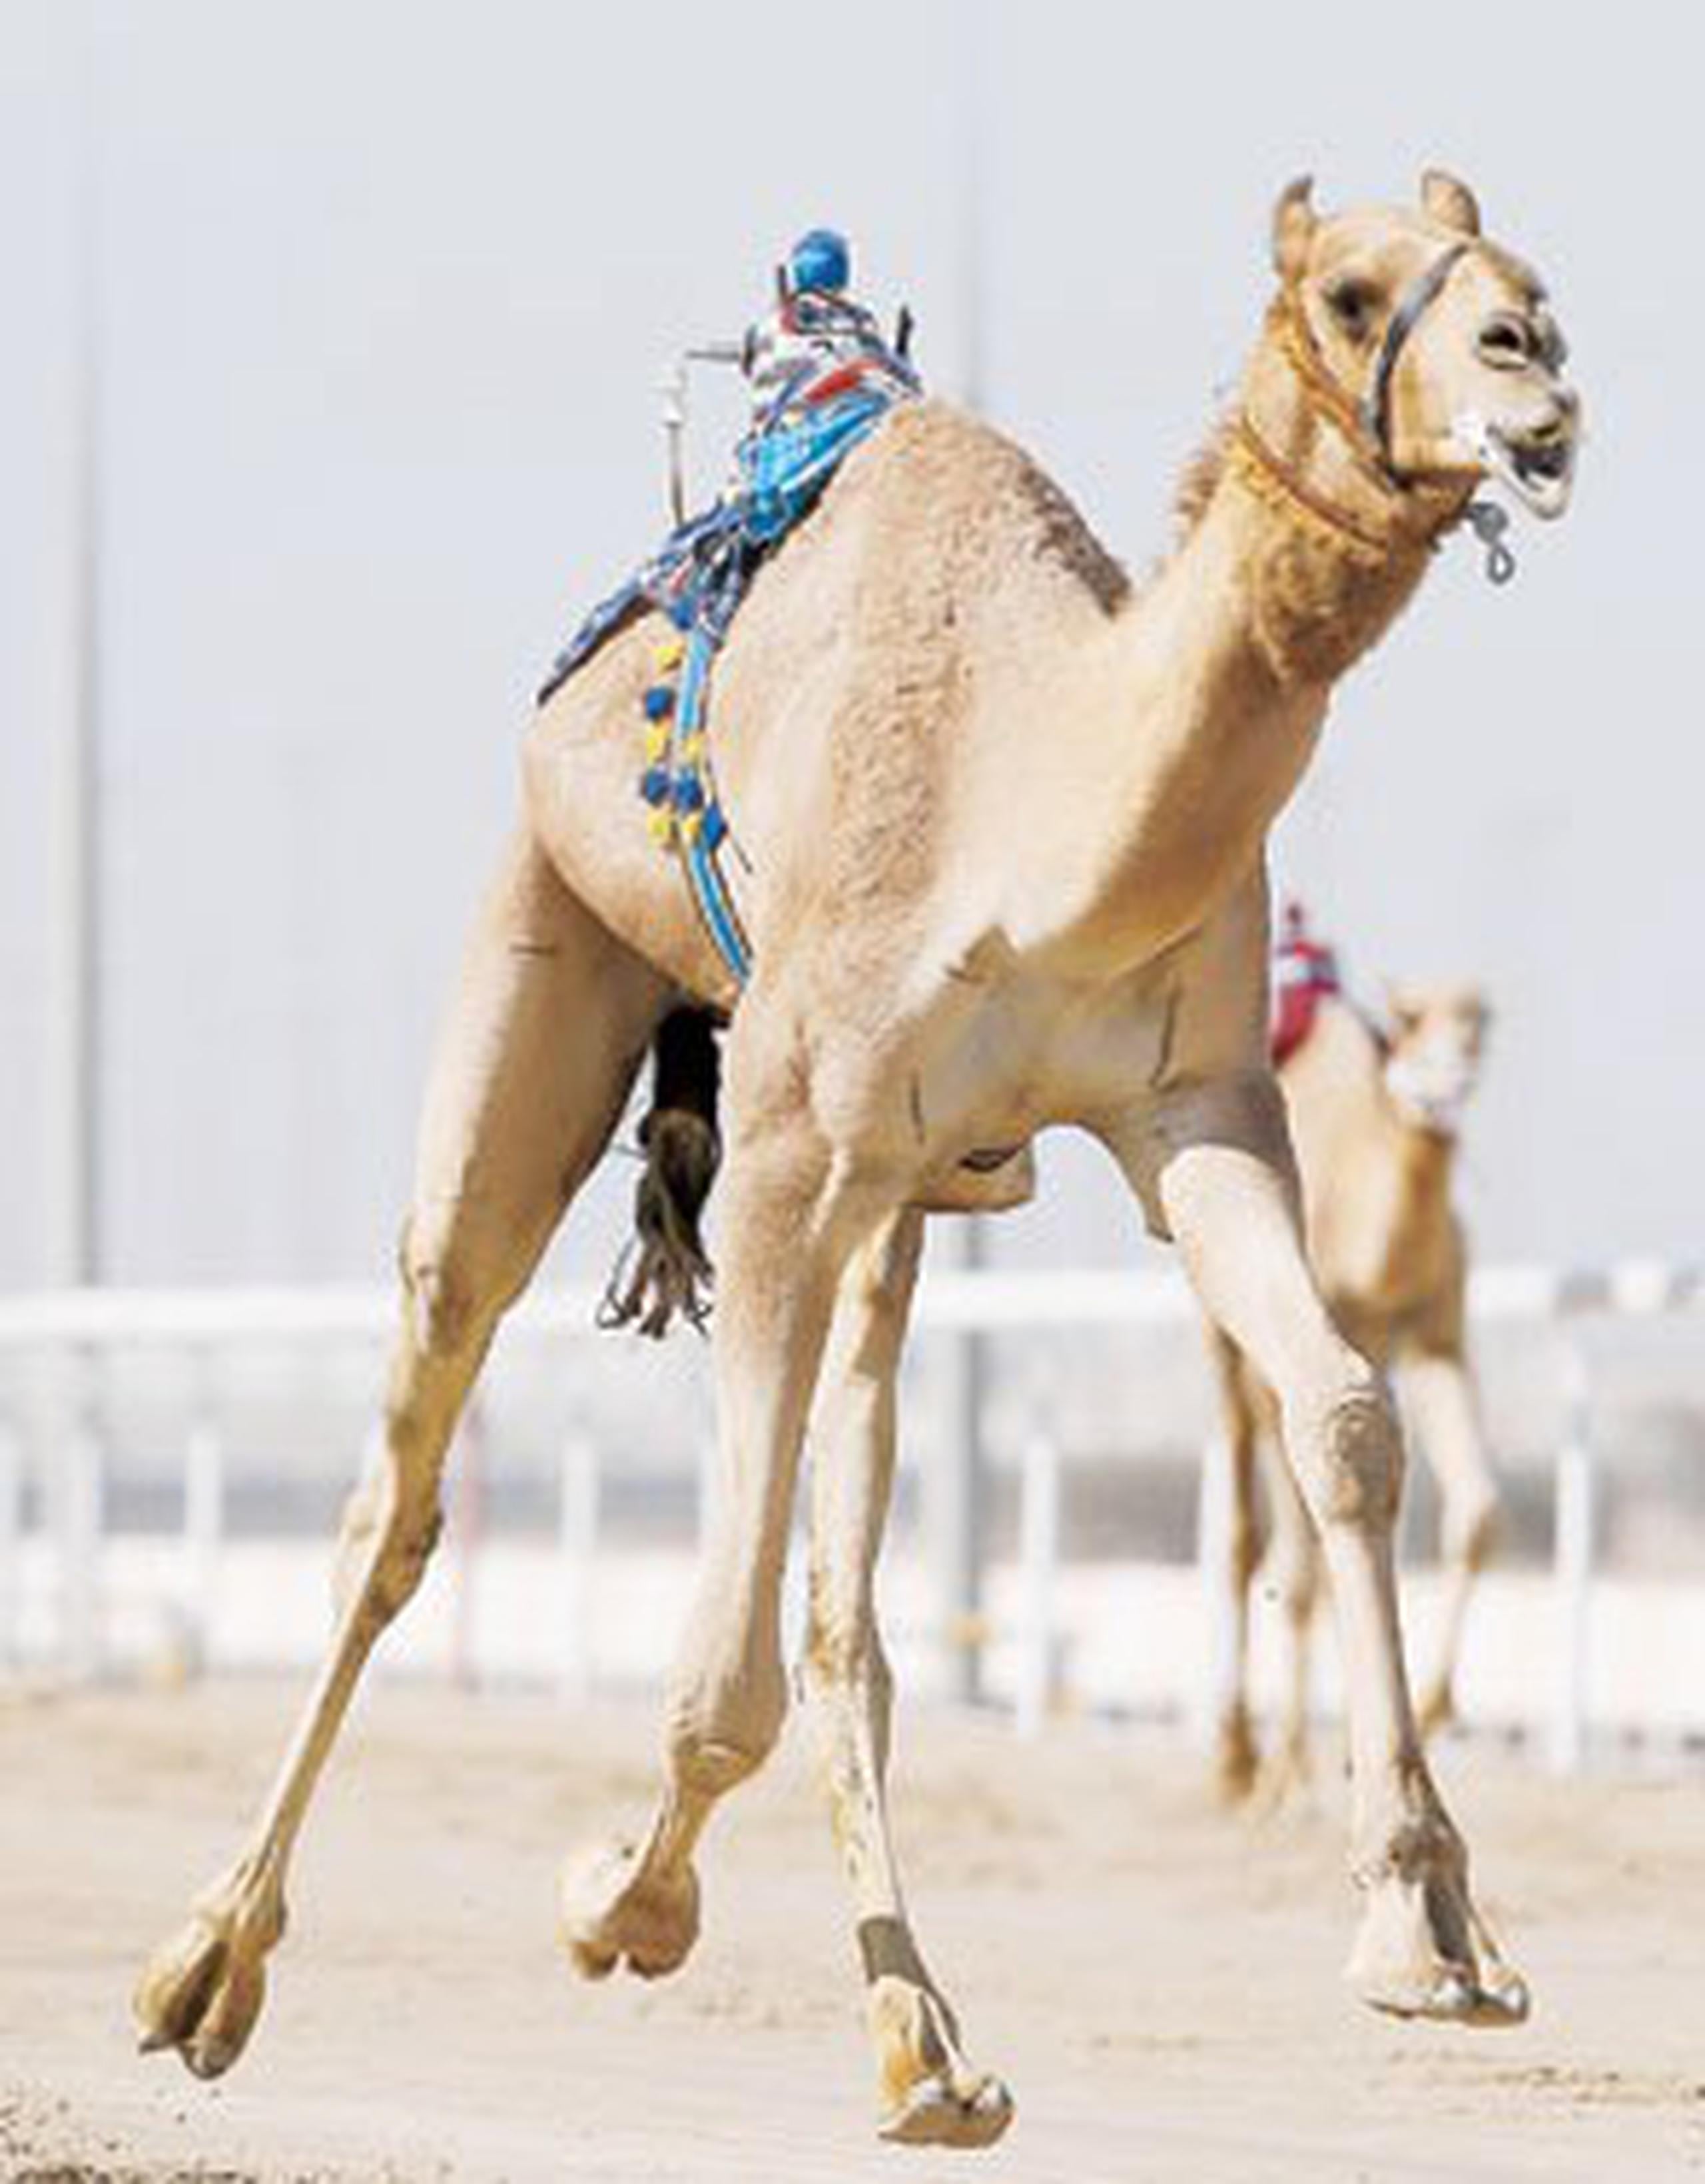 En febrero de 2005 científicos emiratíes lograron producir además el primer camello probeta del mundo. (Archivo)